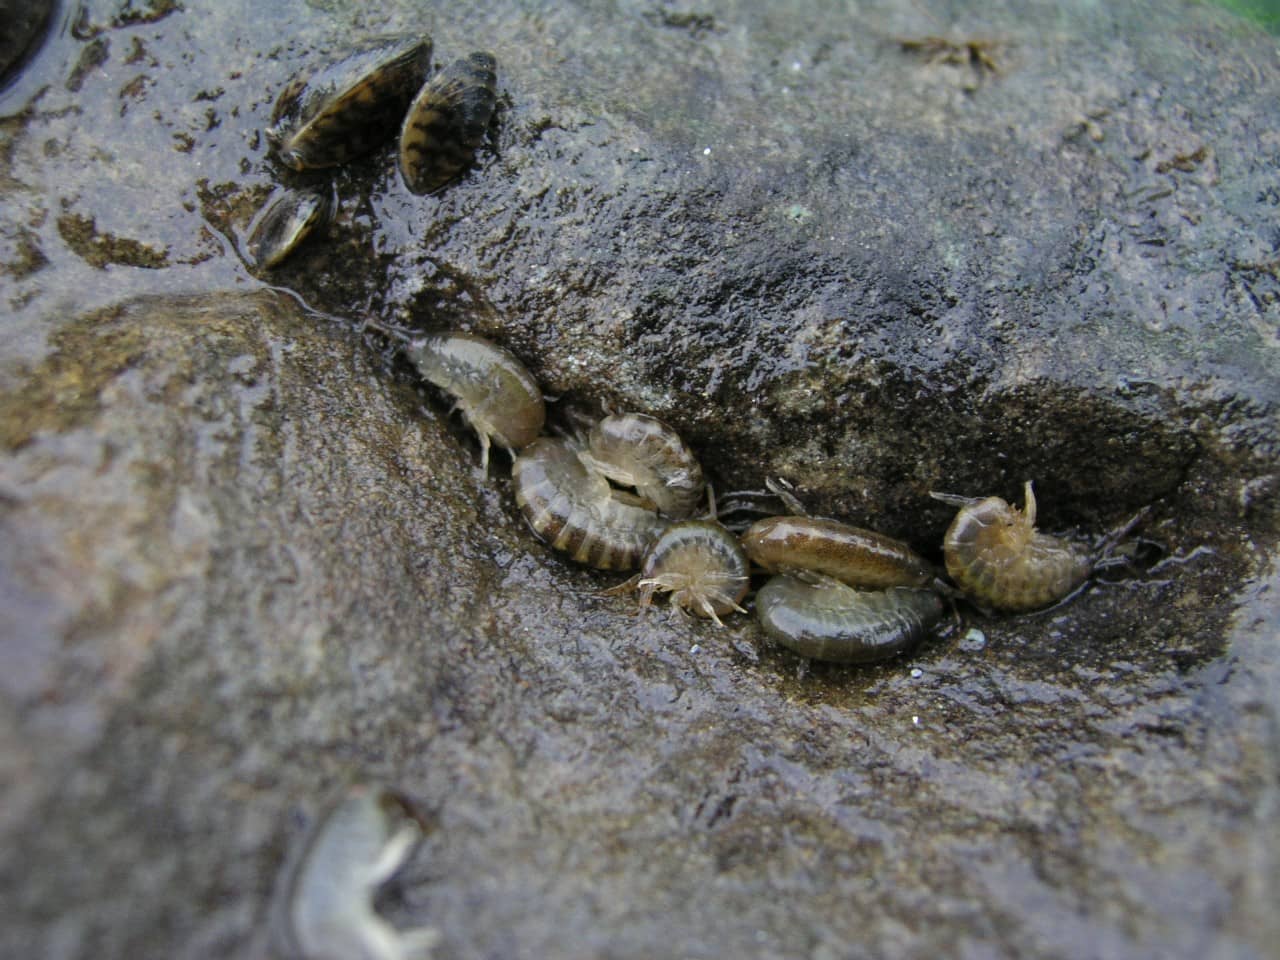 Ansammlung von Grossen Höckerflohkrebsen "Dikerogammarus villosus" auf einem Stein